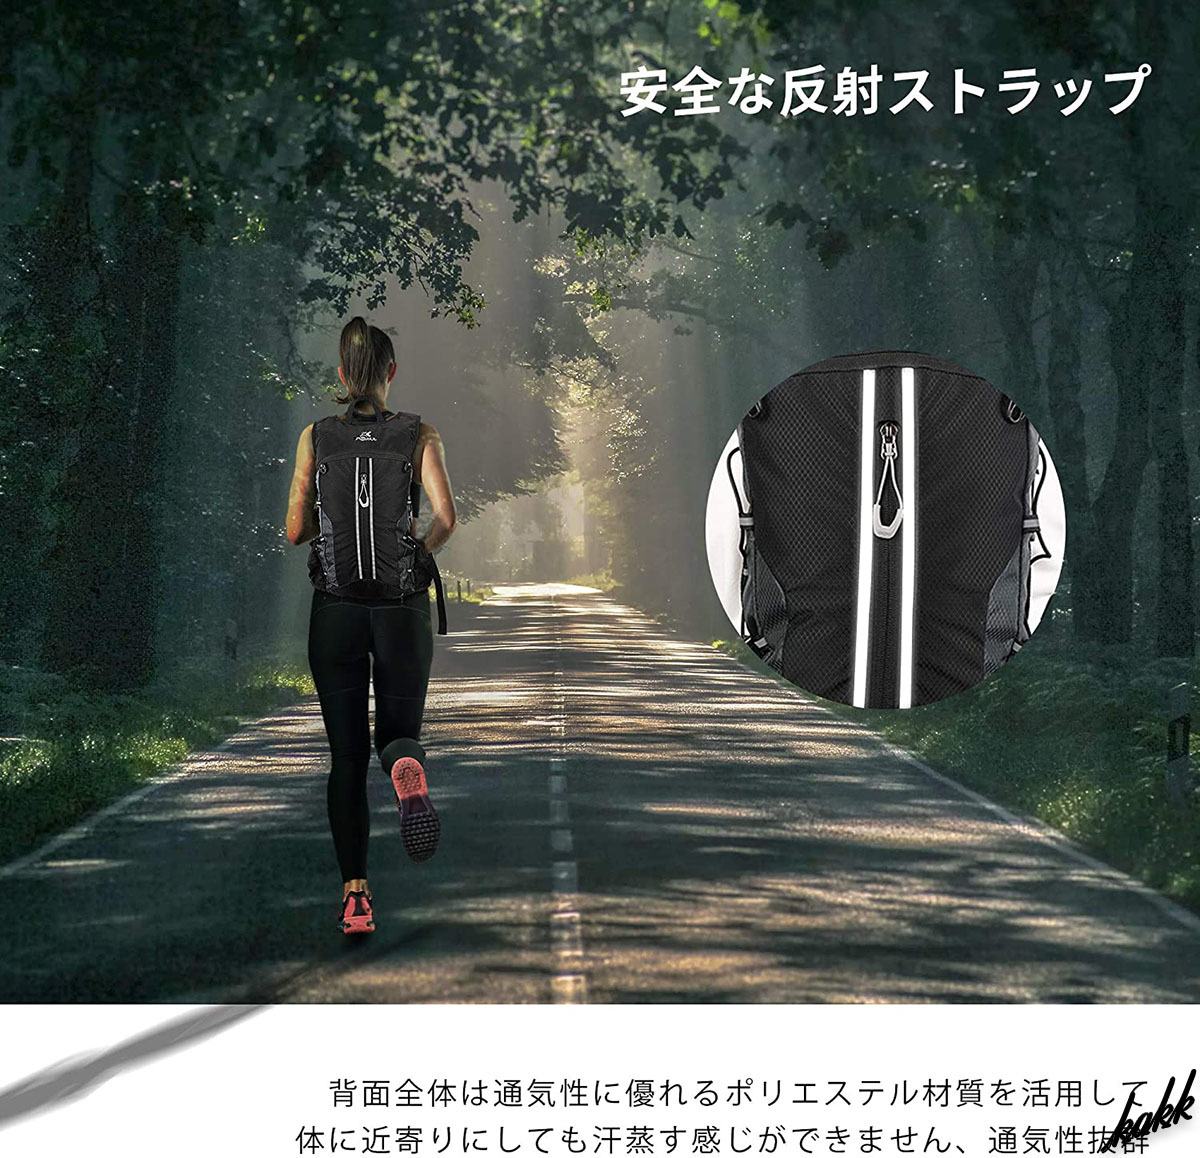 【エコバッグのように小さく畳める】 バッグパック 防水コーティング 光反射設計 ヘルメット専用 アウトドア サイクリング ランニング